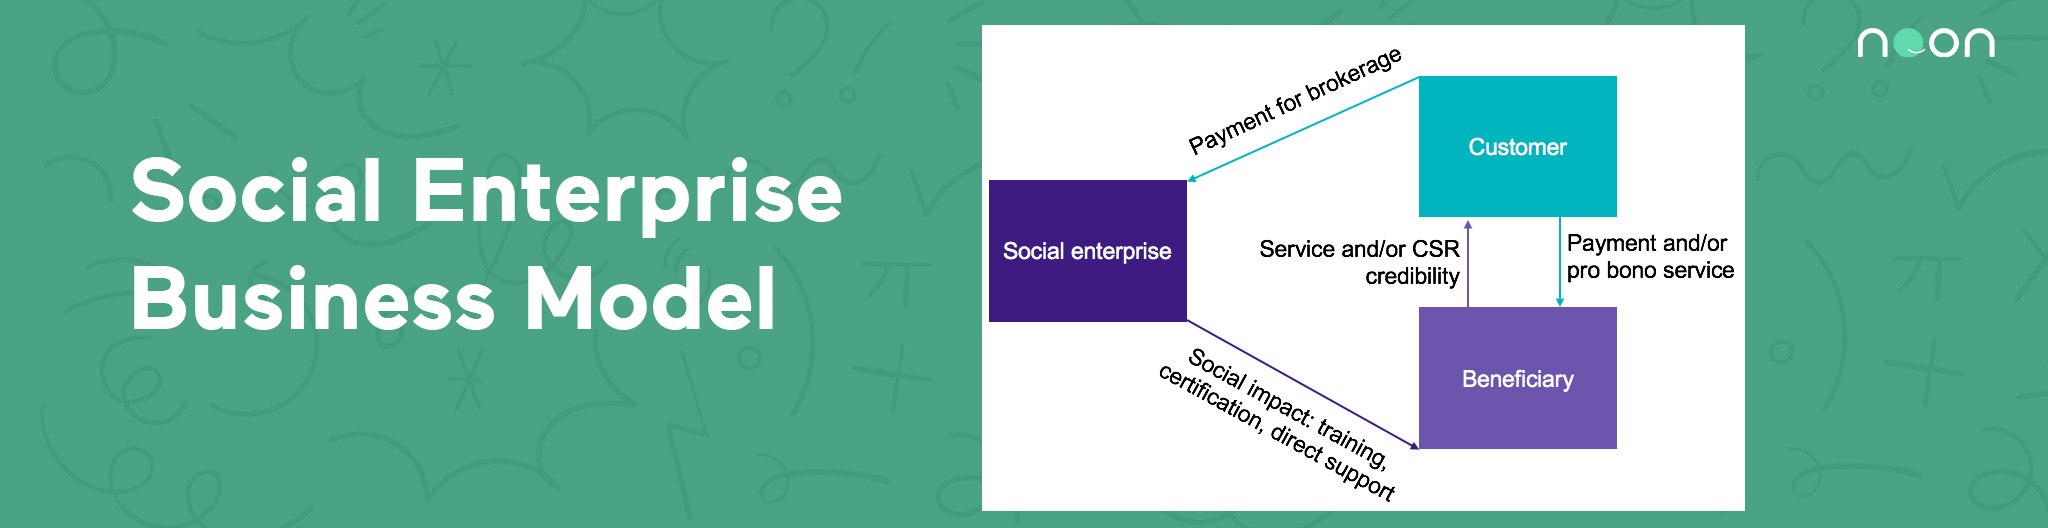 Social Enterprise Business Model